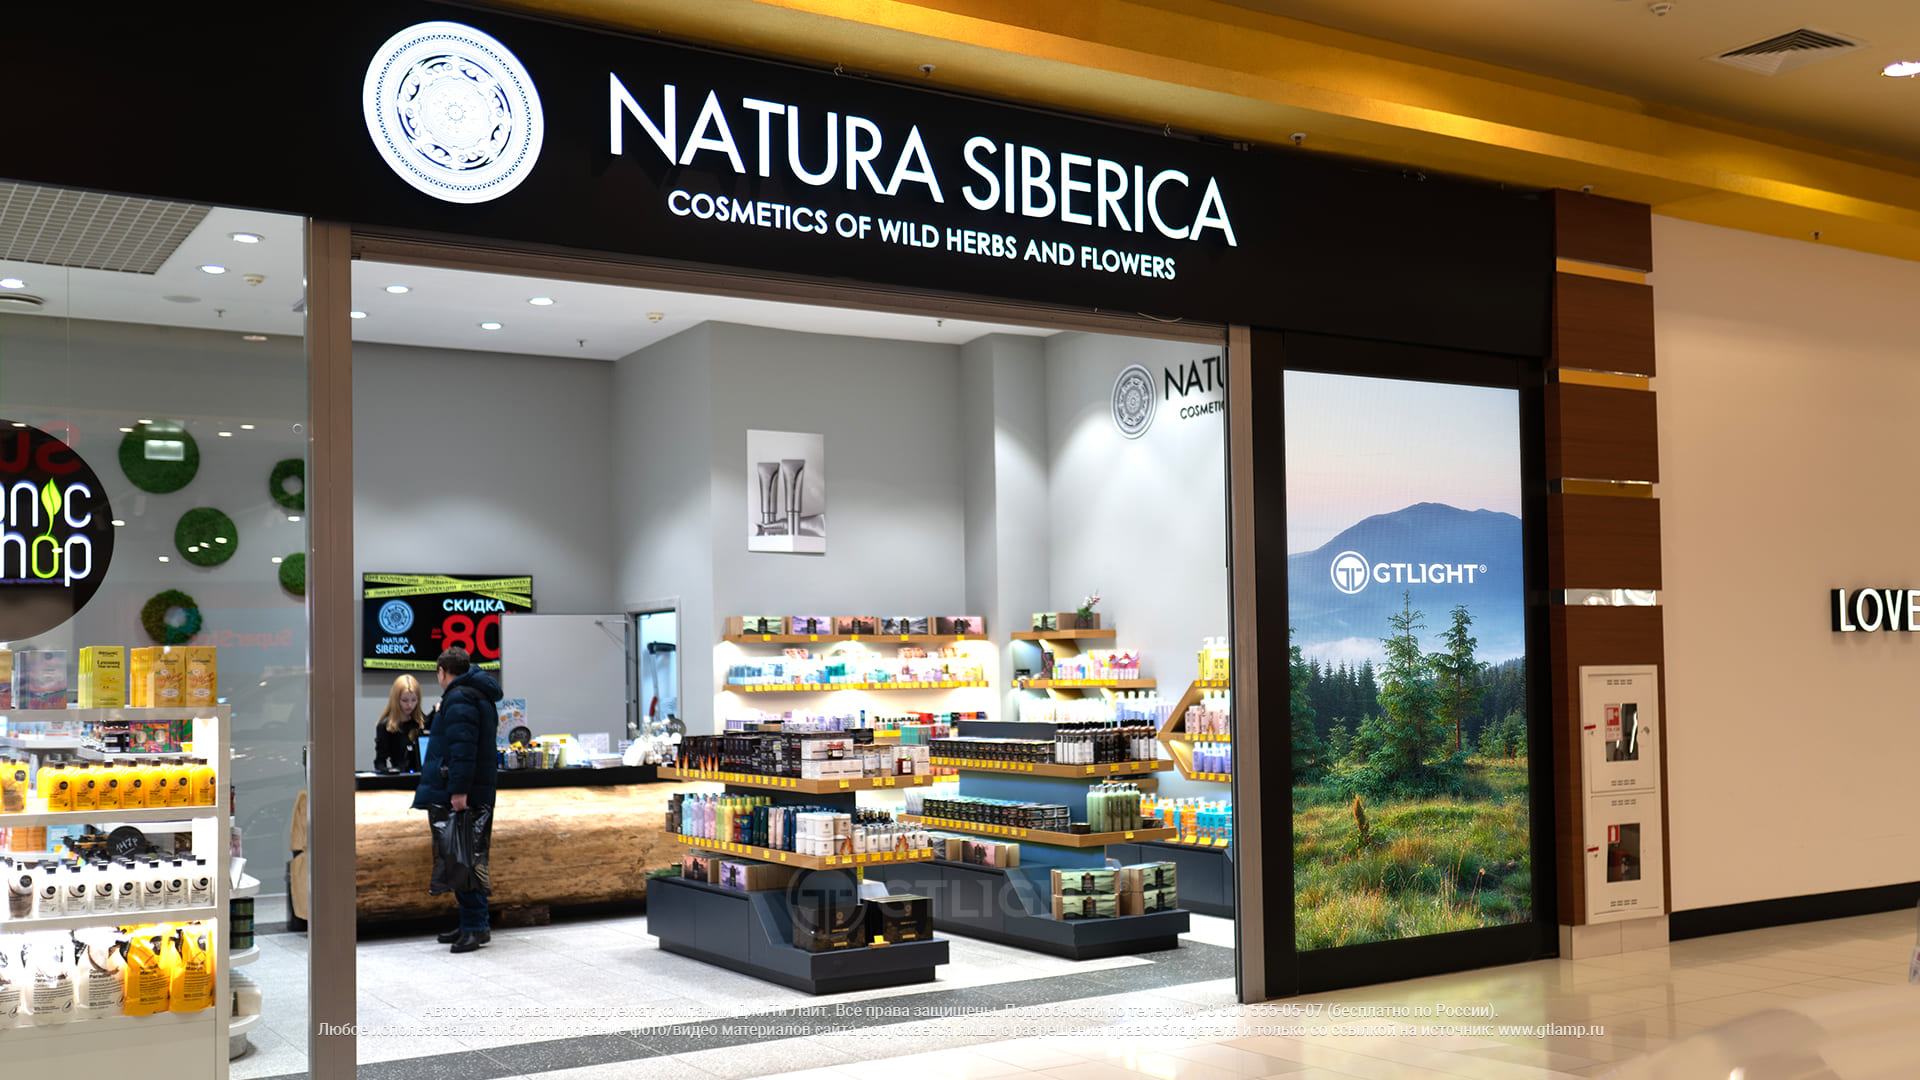 Светодиодный экран для витрины в торговом центре, Сургут, «Natura Siberica», ТРЦ «Аура»